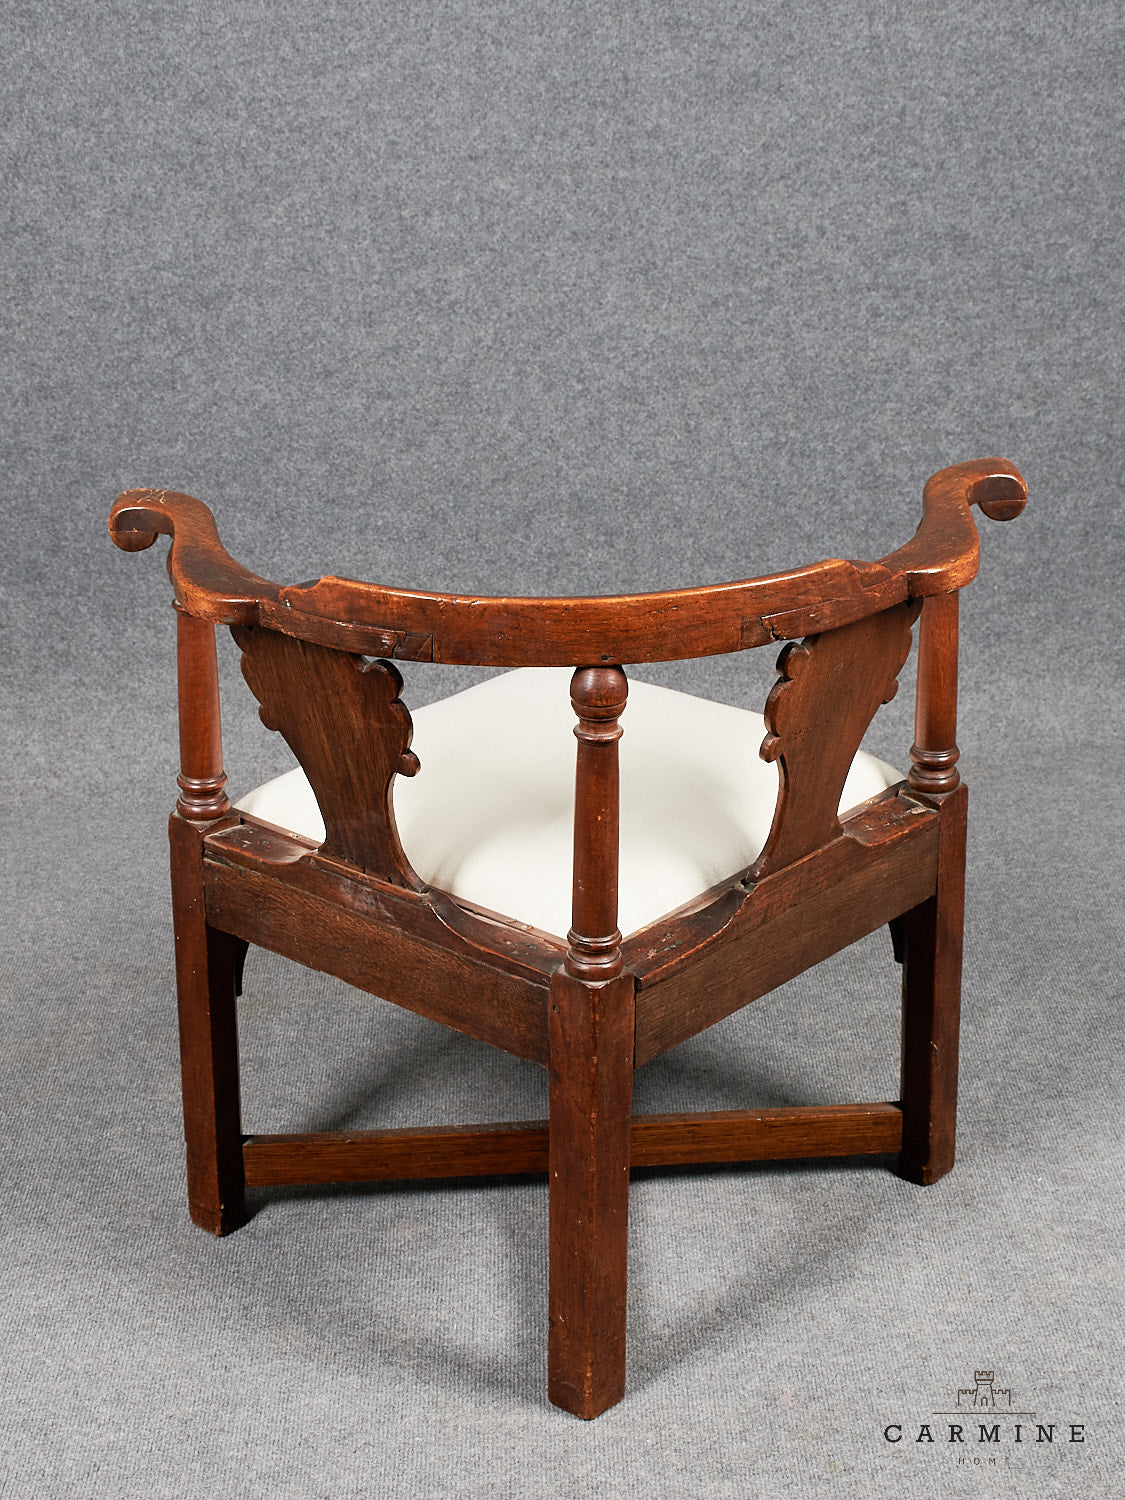 Corner chair (writing chair) around 1750